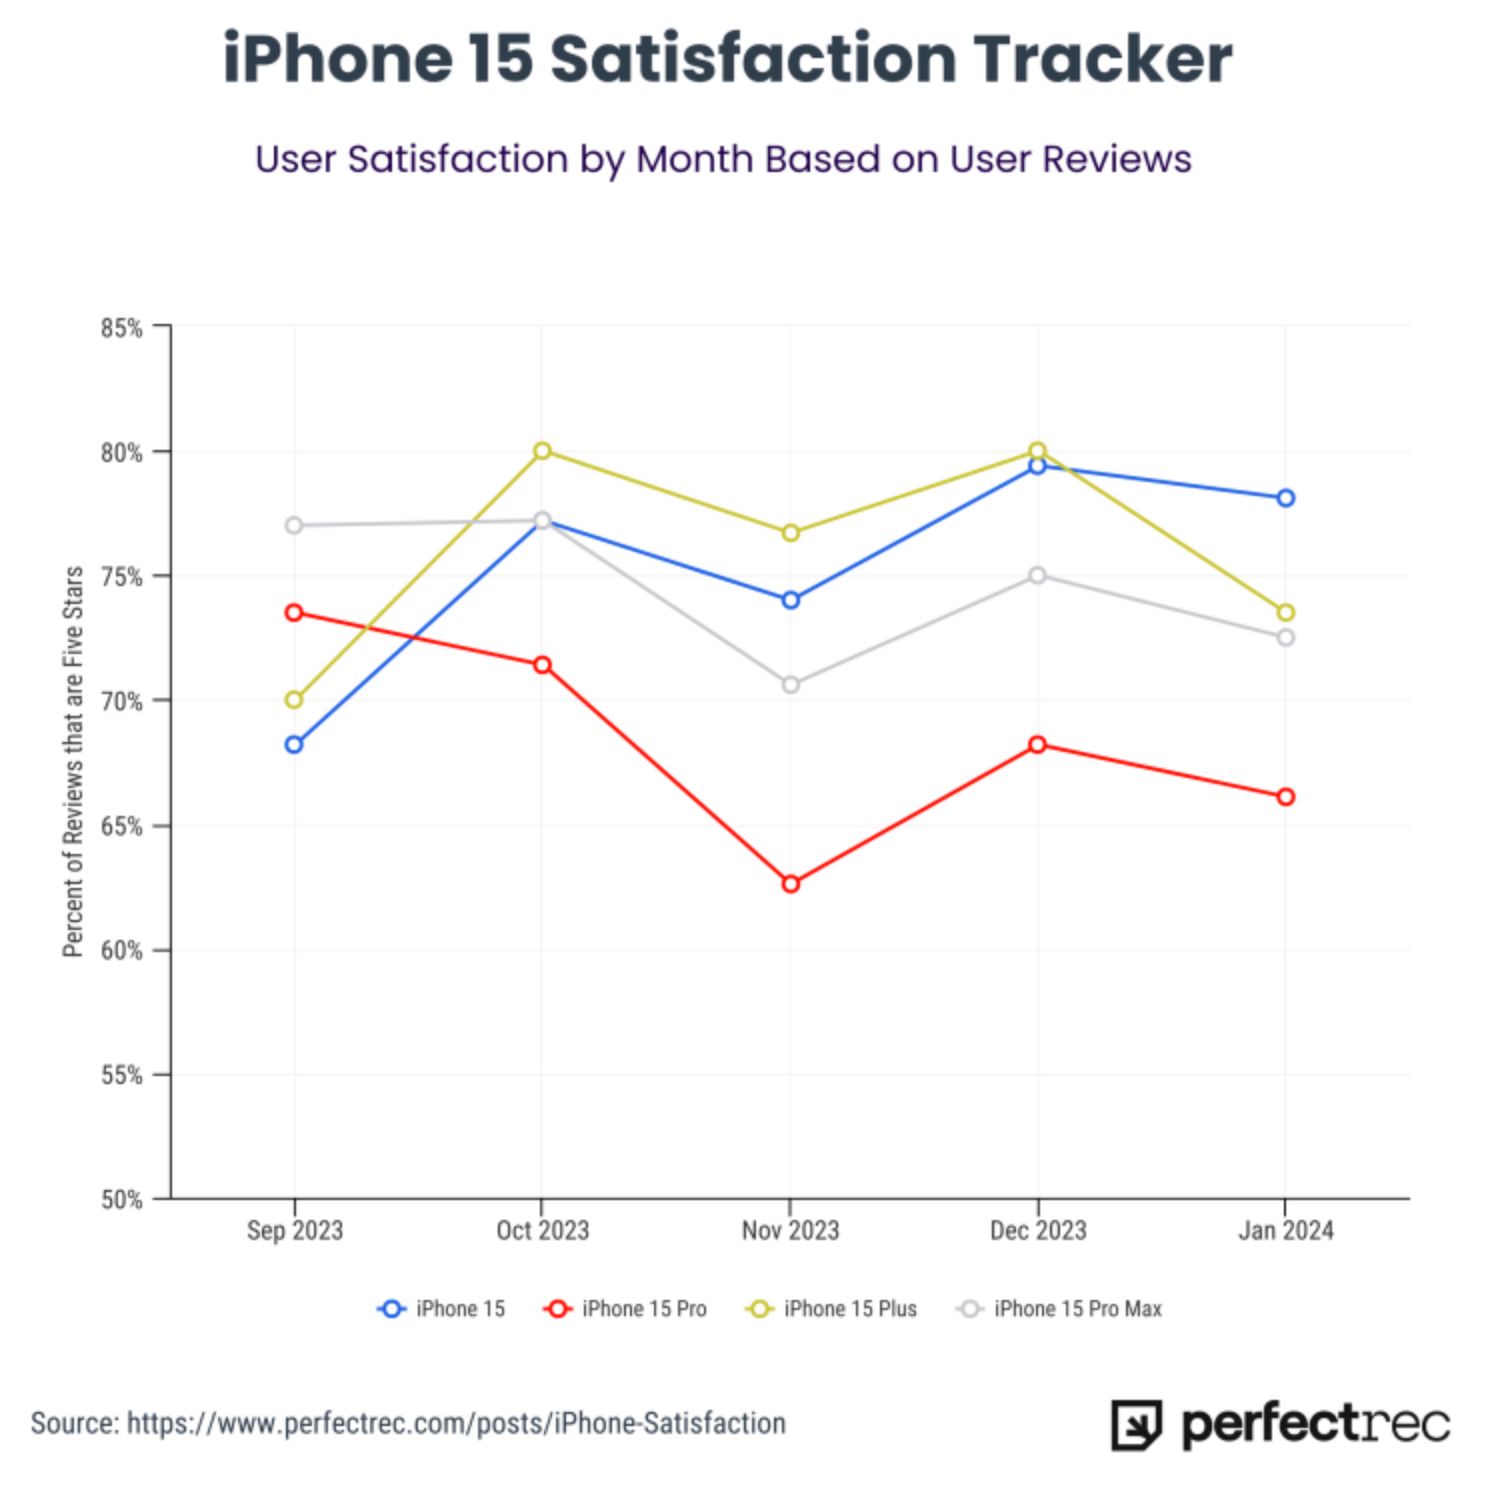 iPhone 15 Satisfaction Tracker